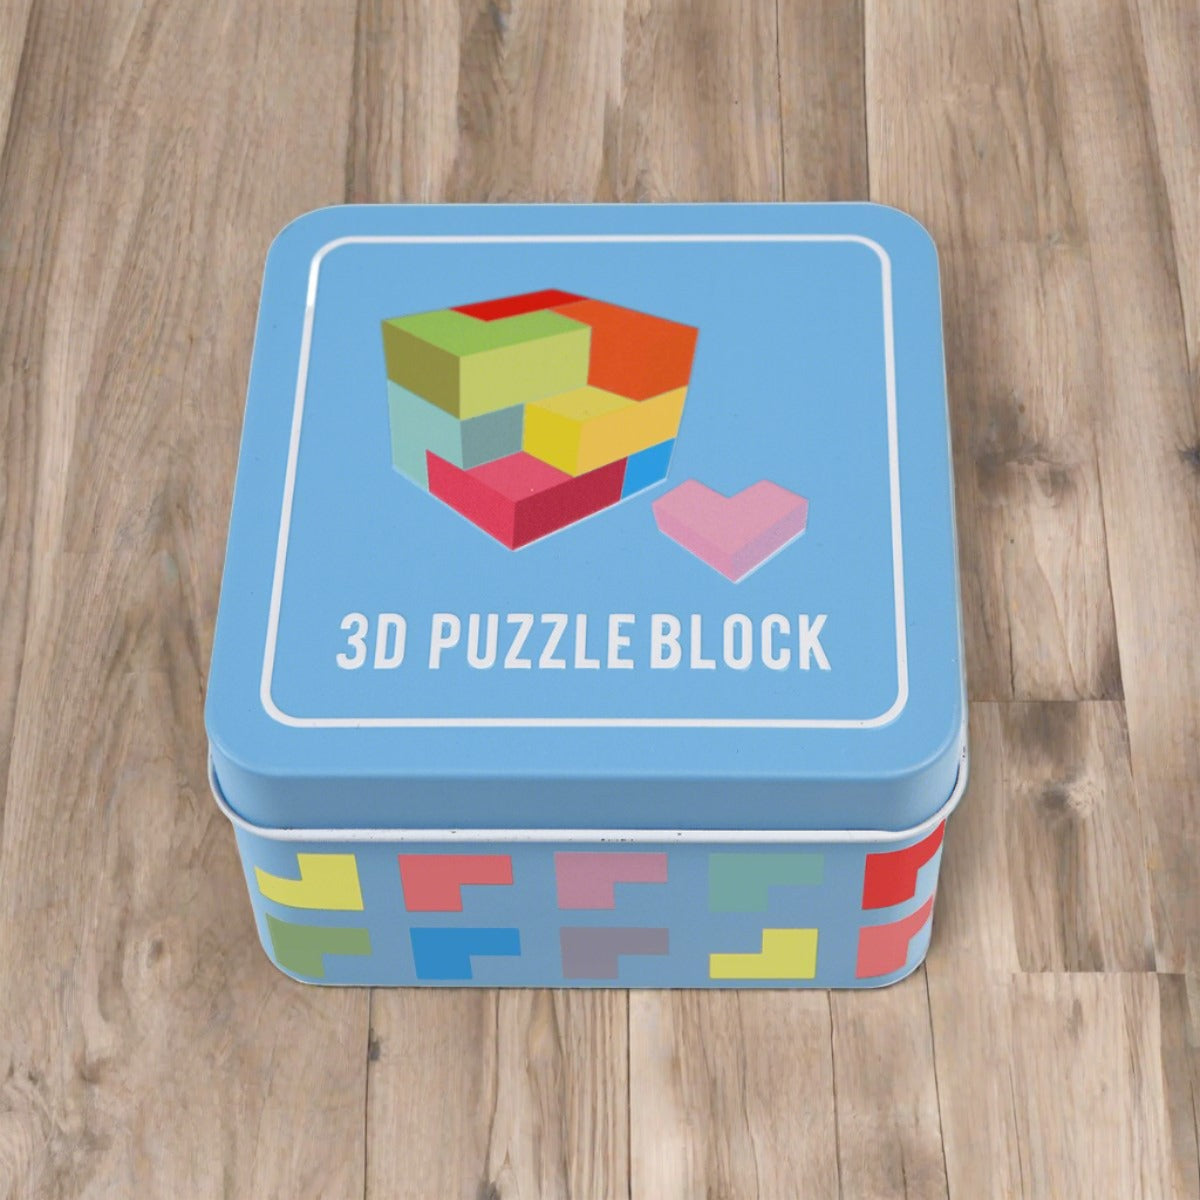 3D Wooden Puzzle Block & Storage Tin - Indoor Outdoors